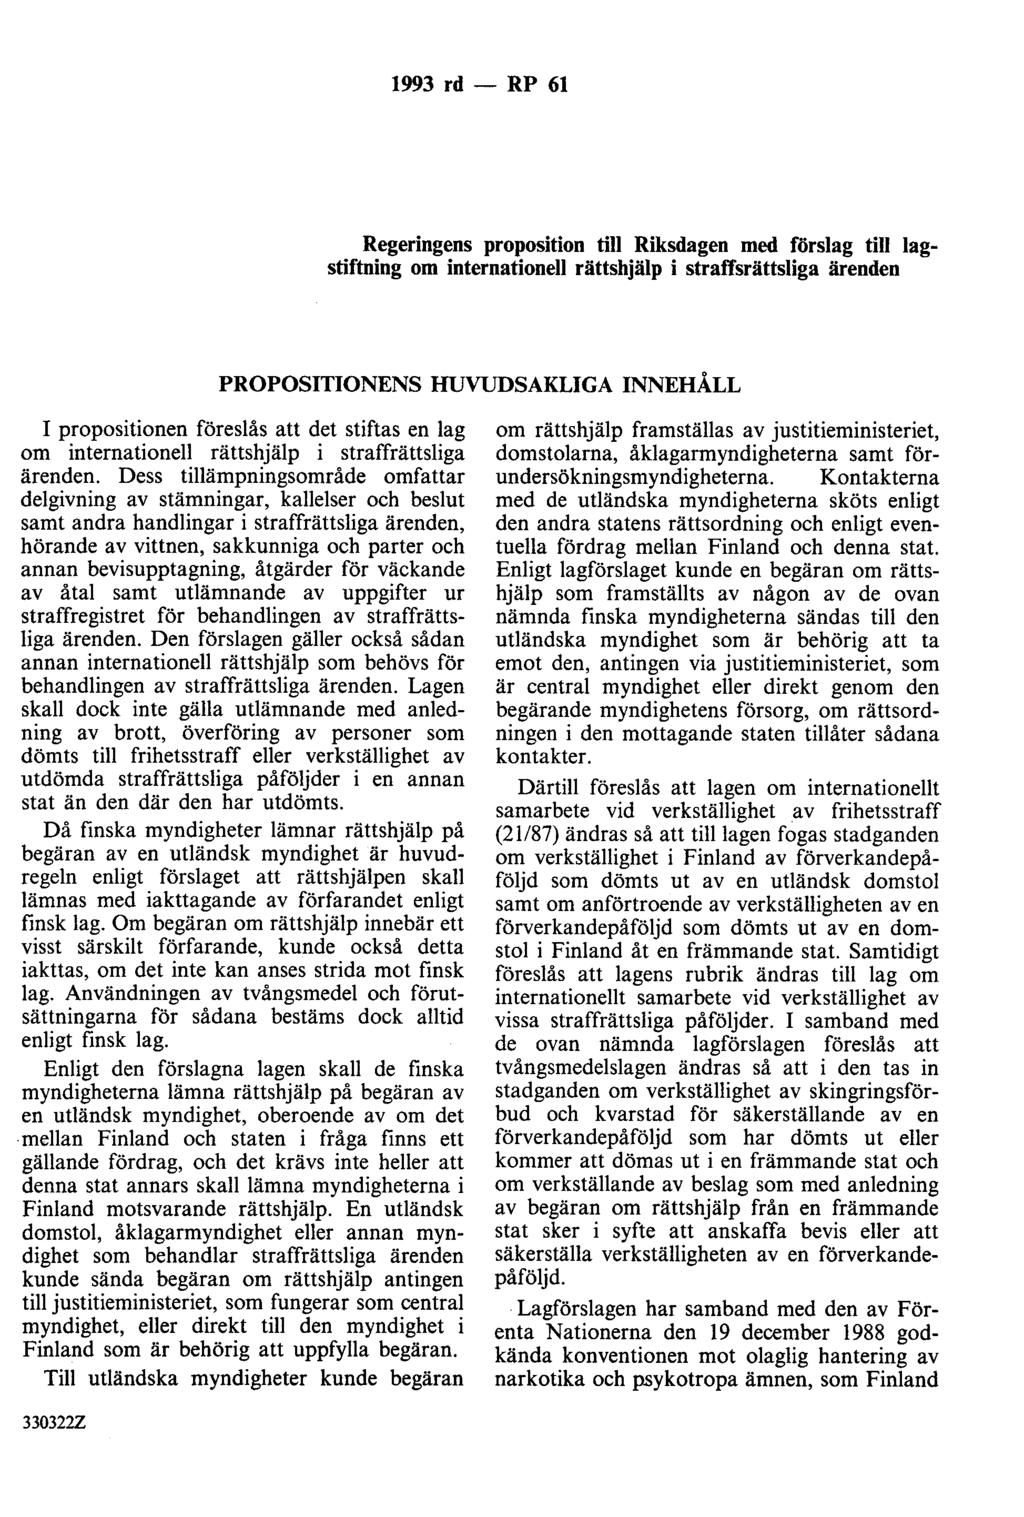 1993 rd - RP 61 Regeringens proposition till Riksdagen med förslag till lagstiftning om internationell rättshjälp i straffsrättsliga ärenden PROPOSITIONENS HUVUDSAKLIGA INNEHÅLL I propositionen